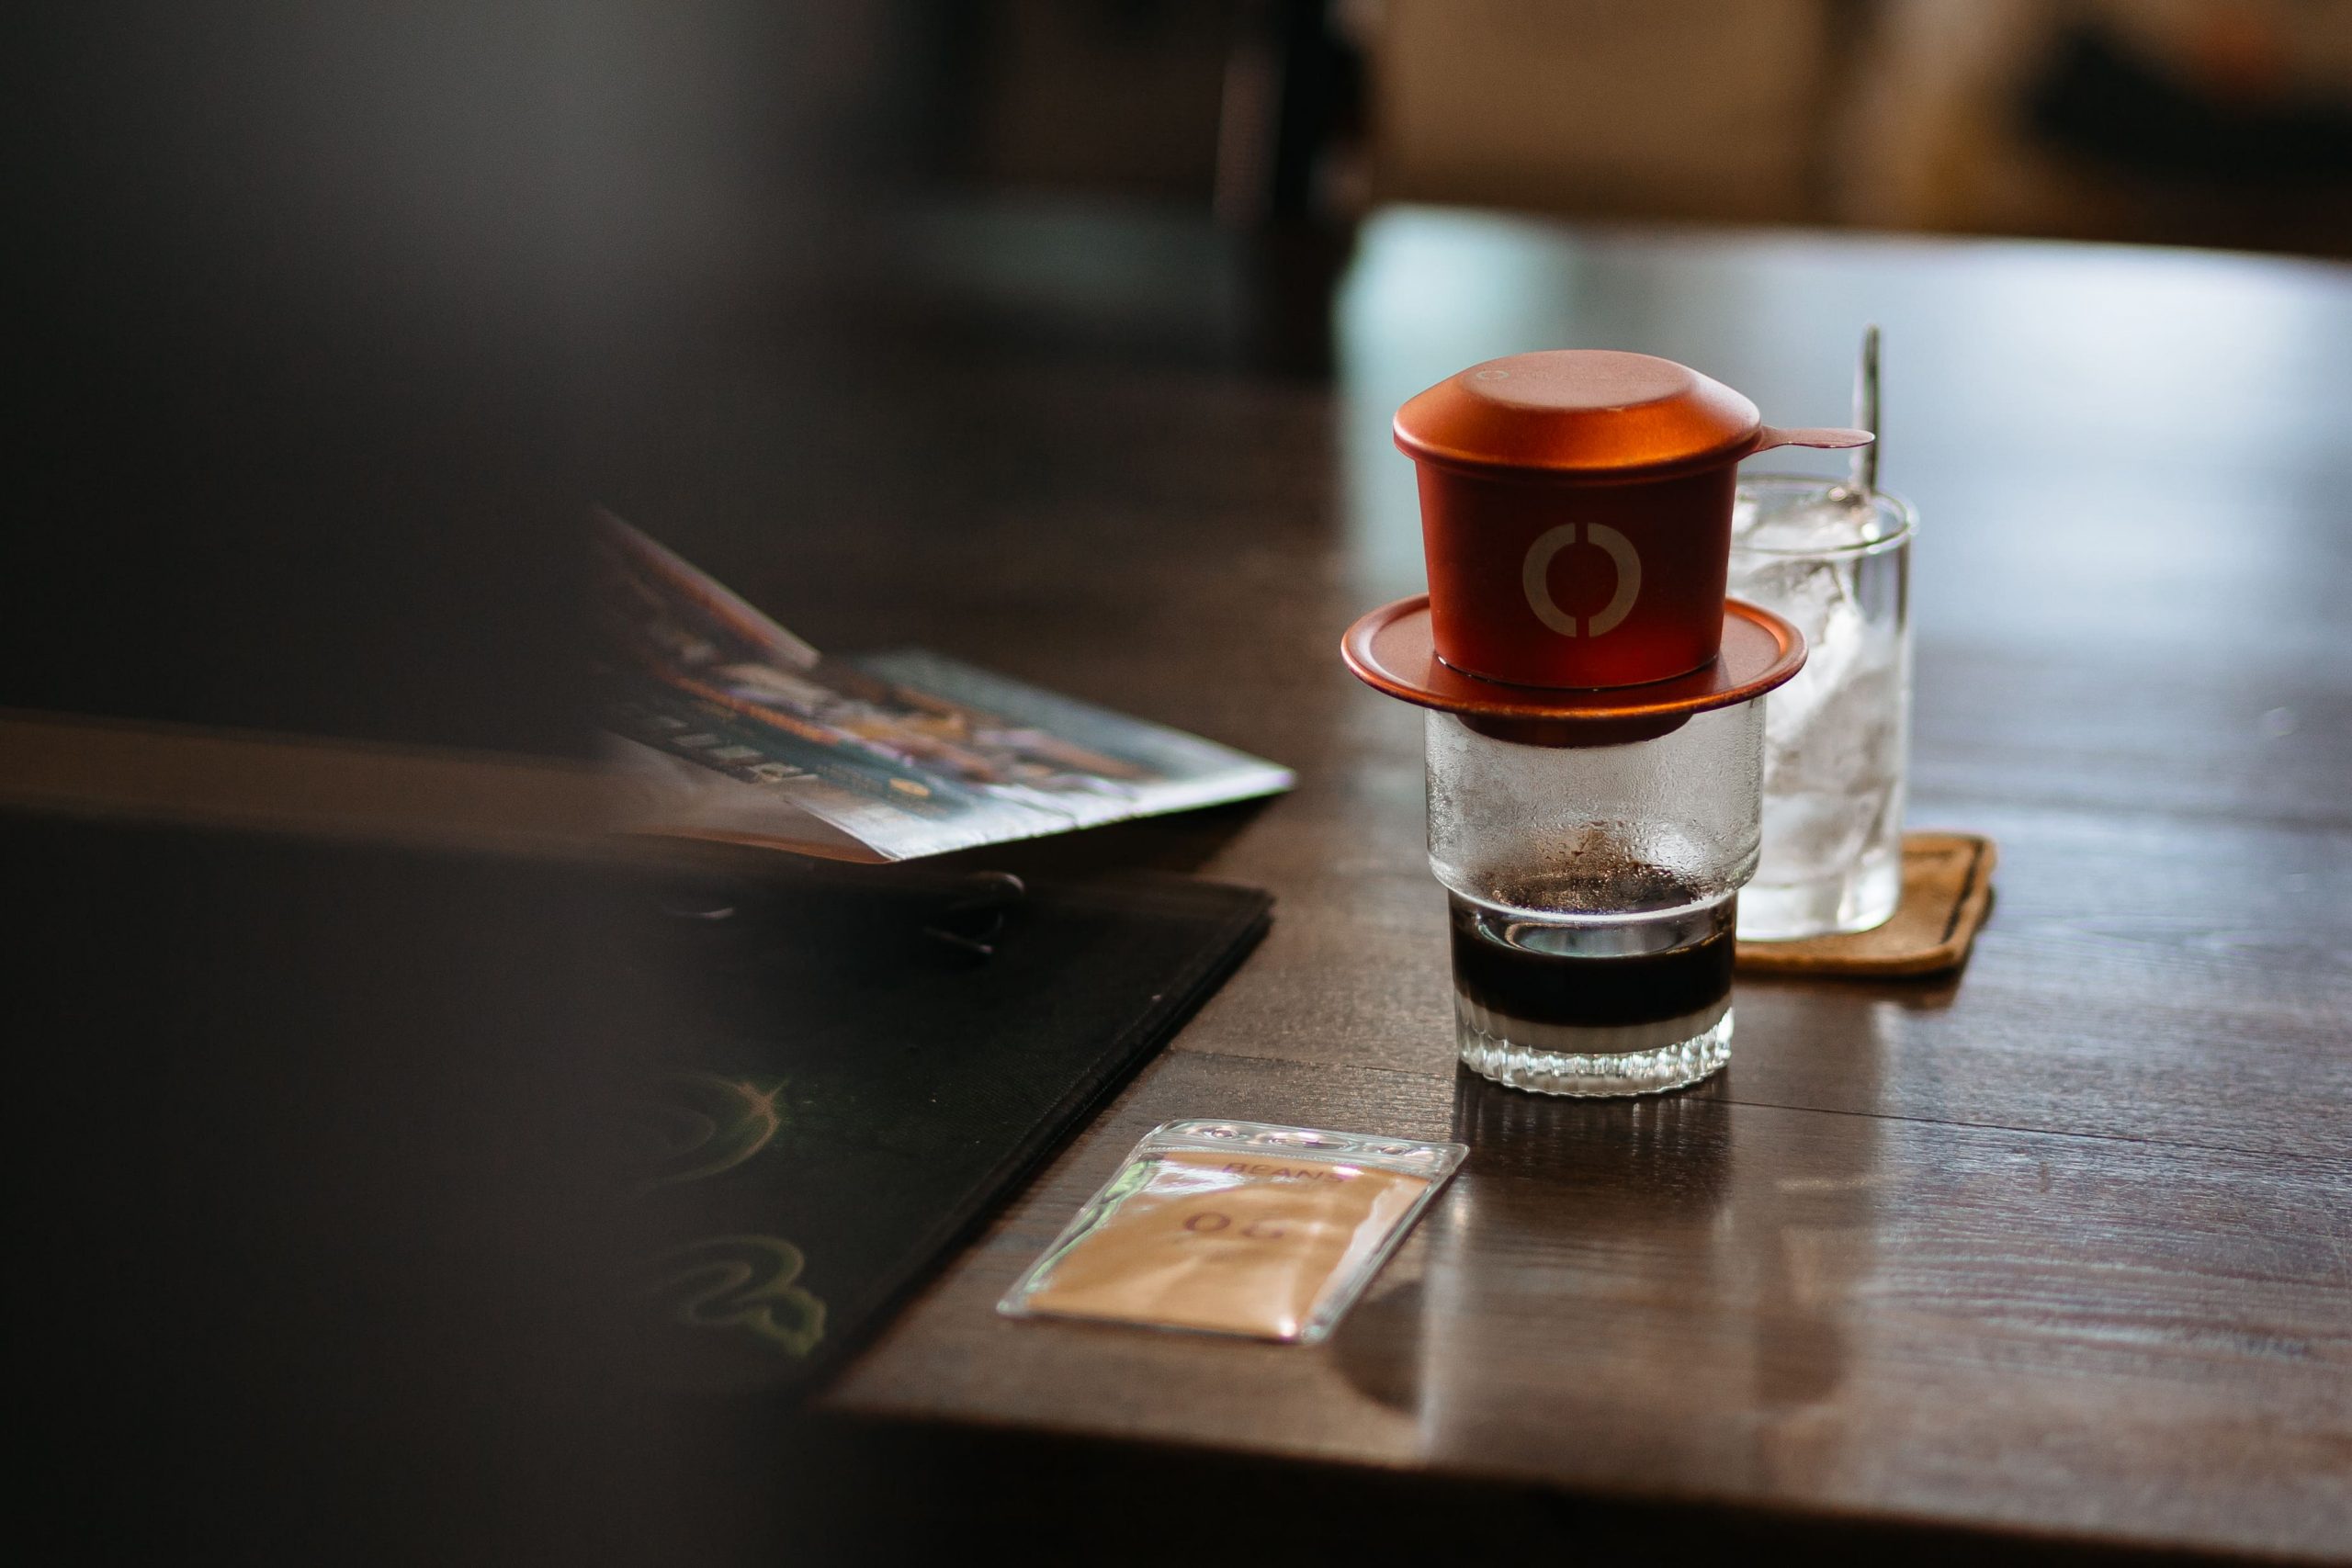 văn hoá cafe và trà việt nam, hình ảnh cà phê phin - văn hoá cà phê việt